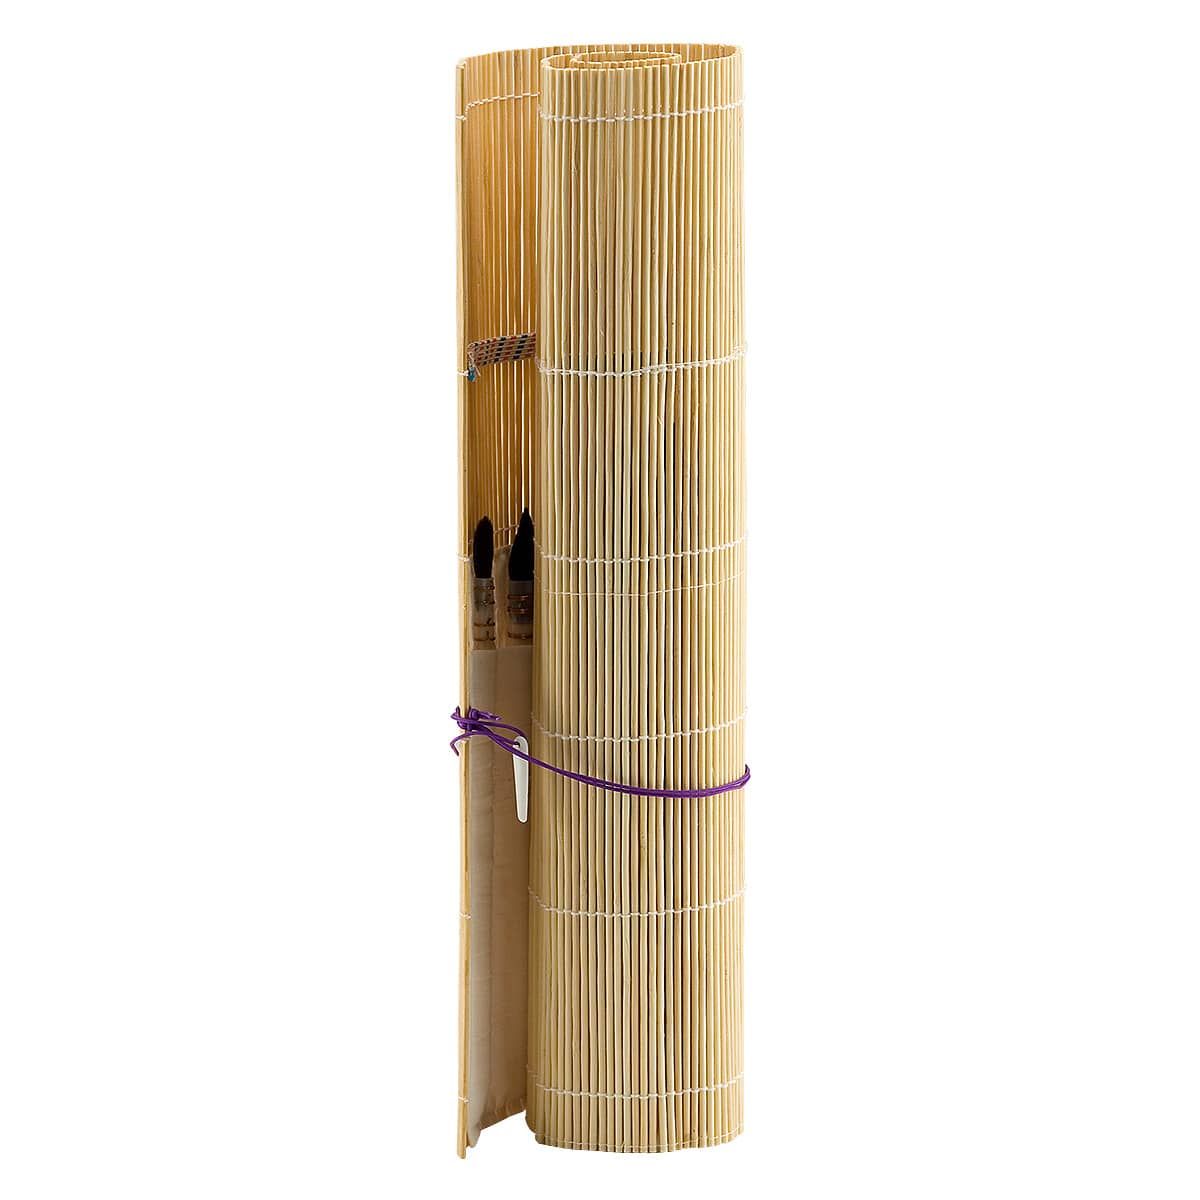 Bamboo roll-up brush holder
